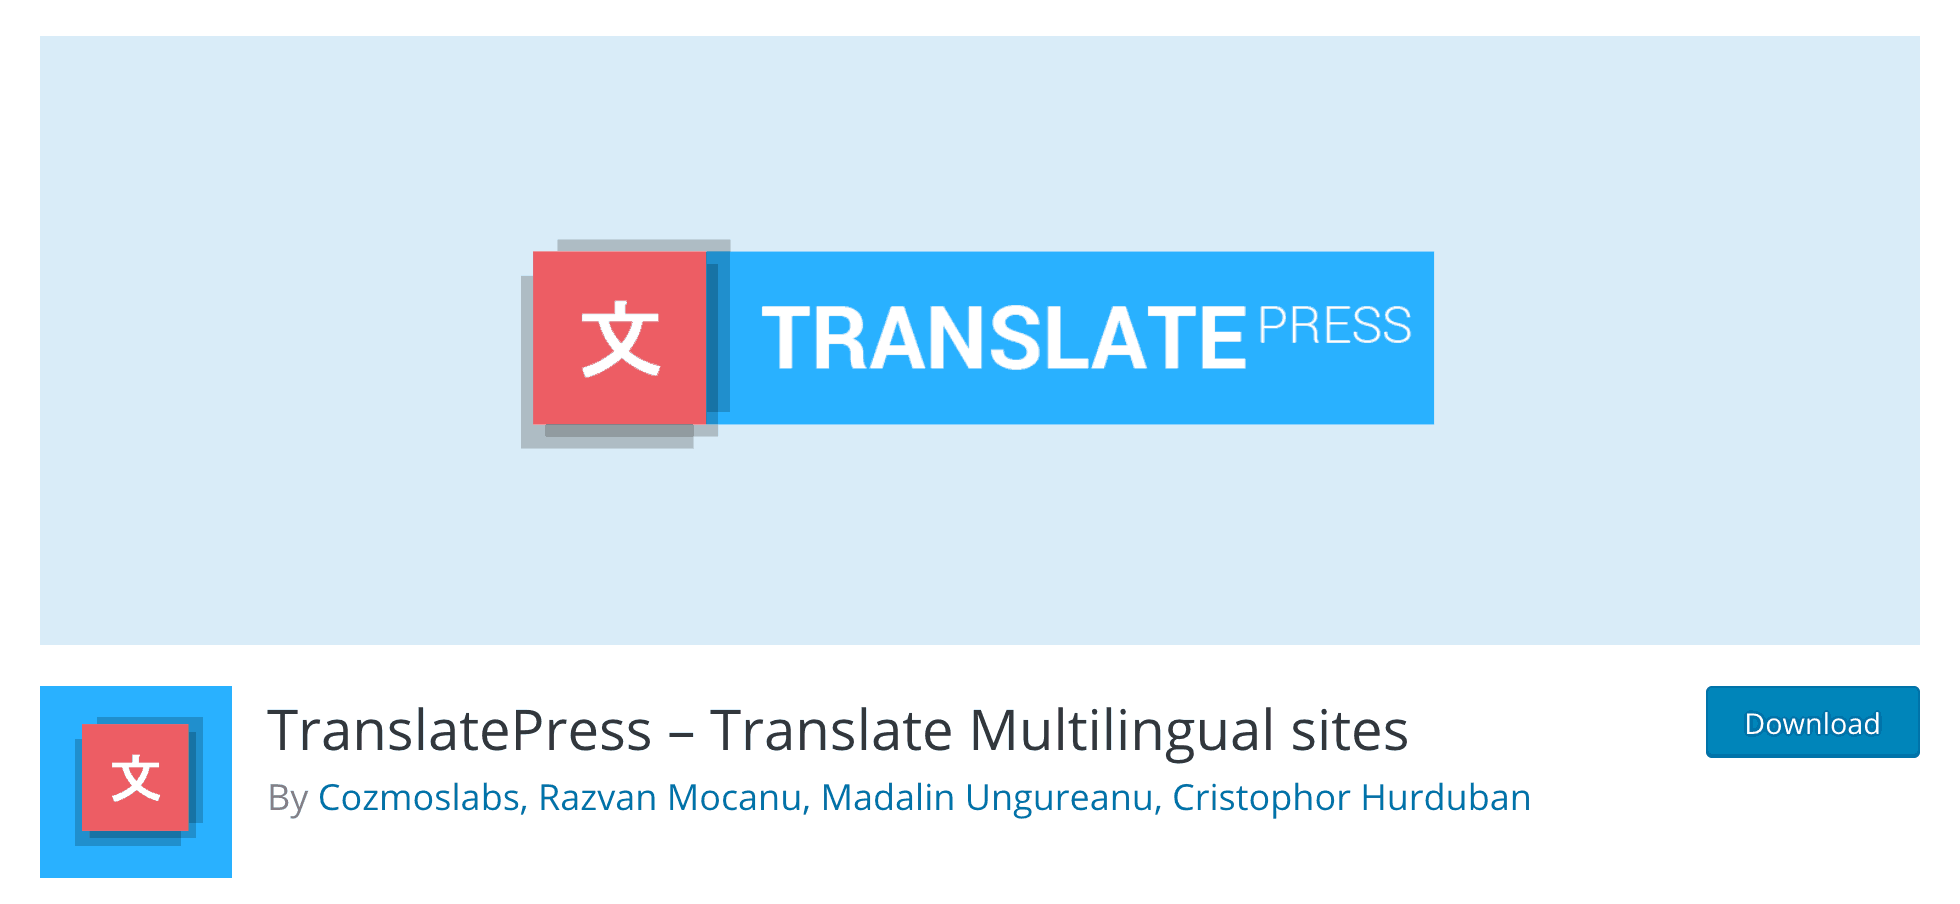 The TranslatePress plugin.